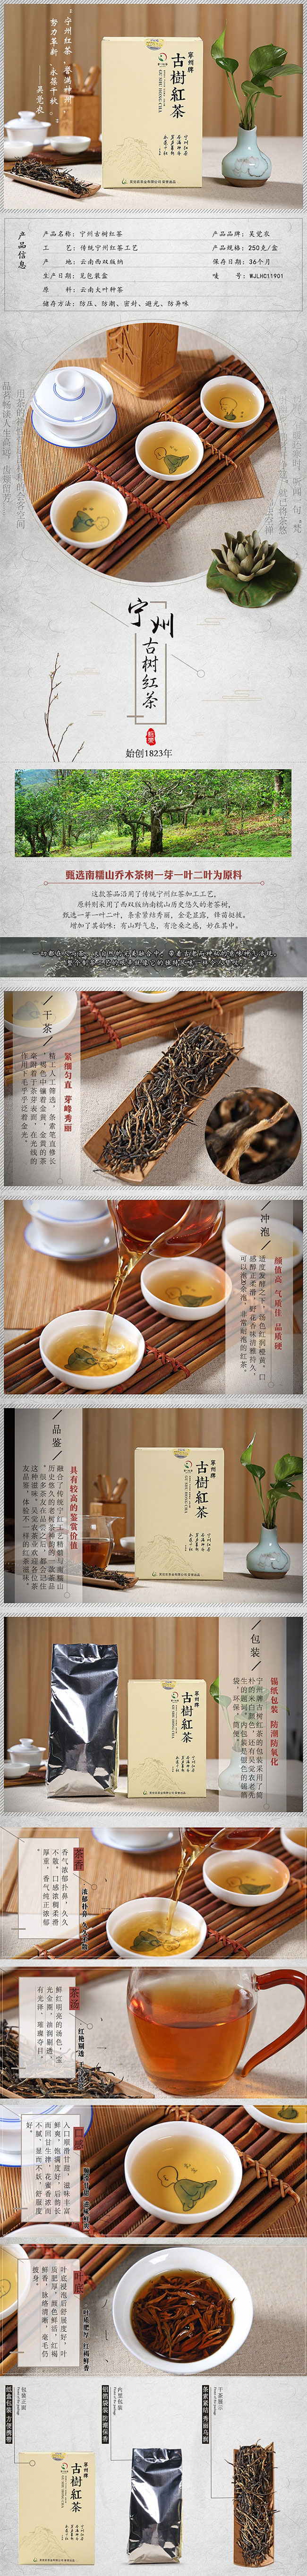 吴觉农 茶叶 江西 宁州工夫红茶 木炭烘焙 手工制作 修水小叶种(图1)